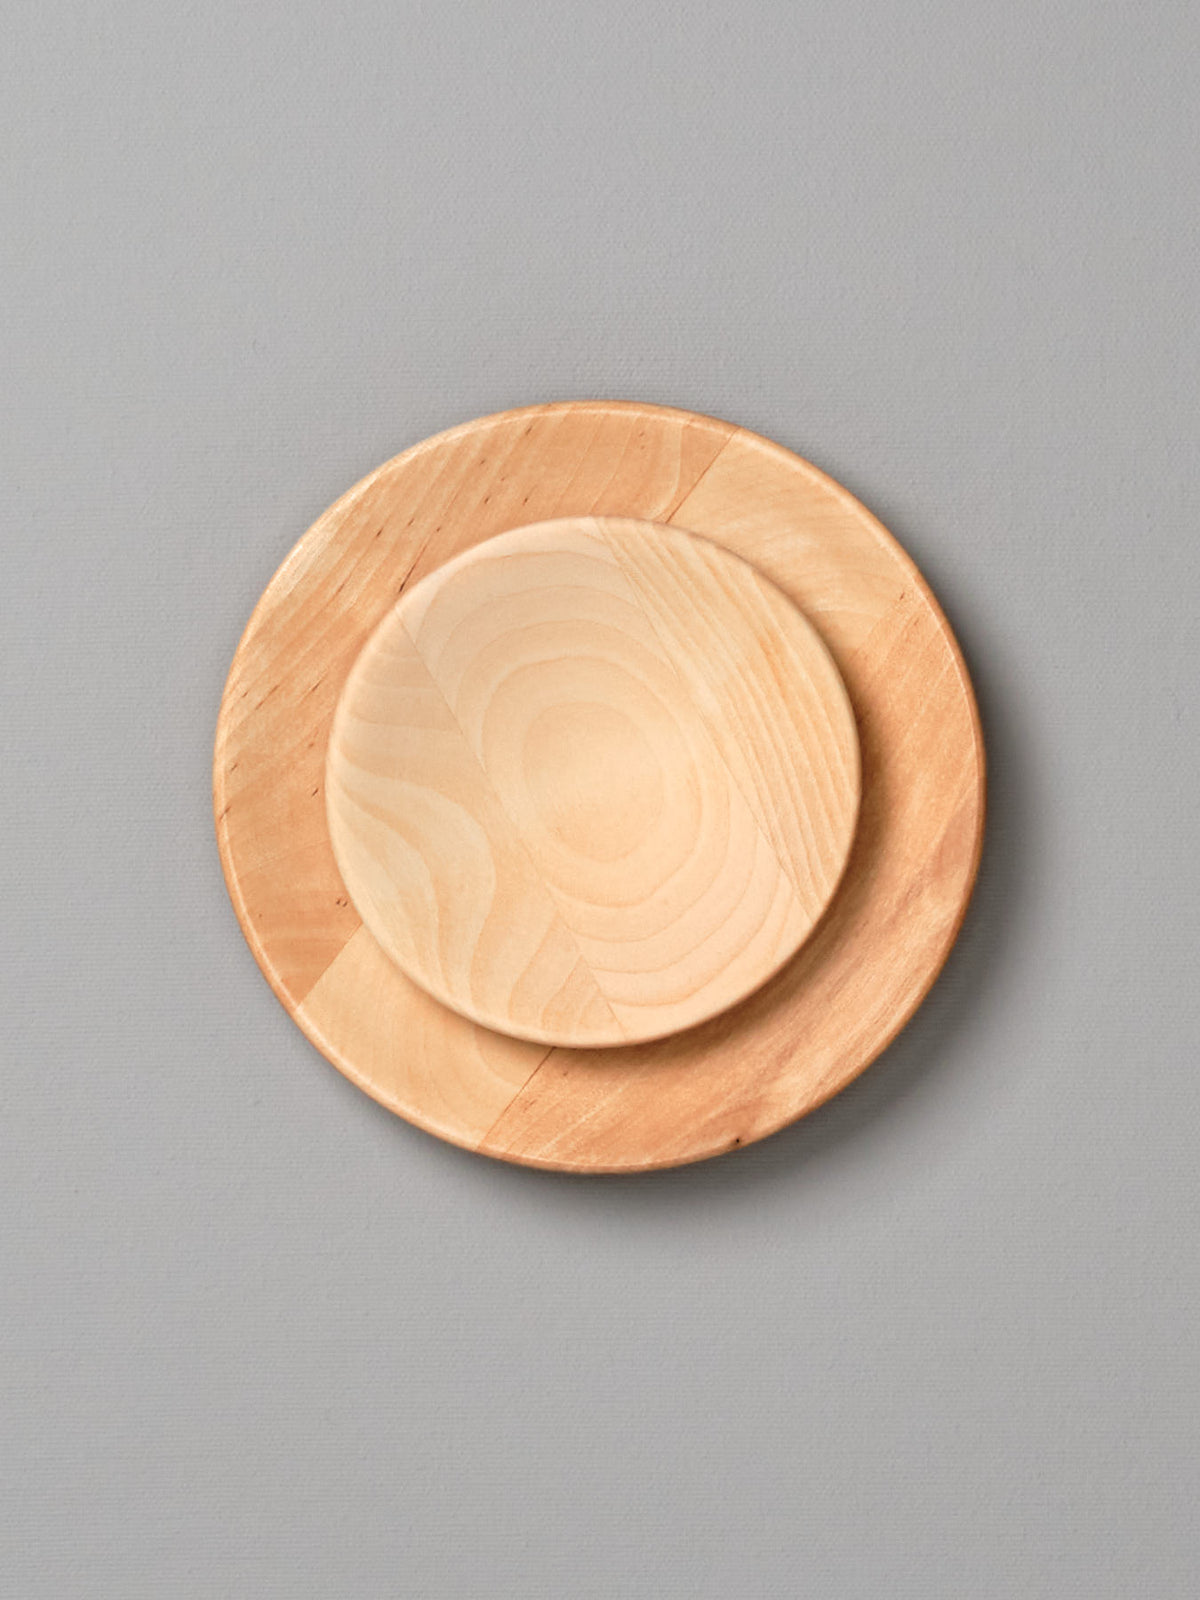 An Iris Hantverk Wooden Plate – Large on a gray background.